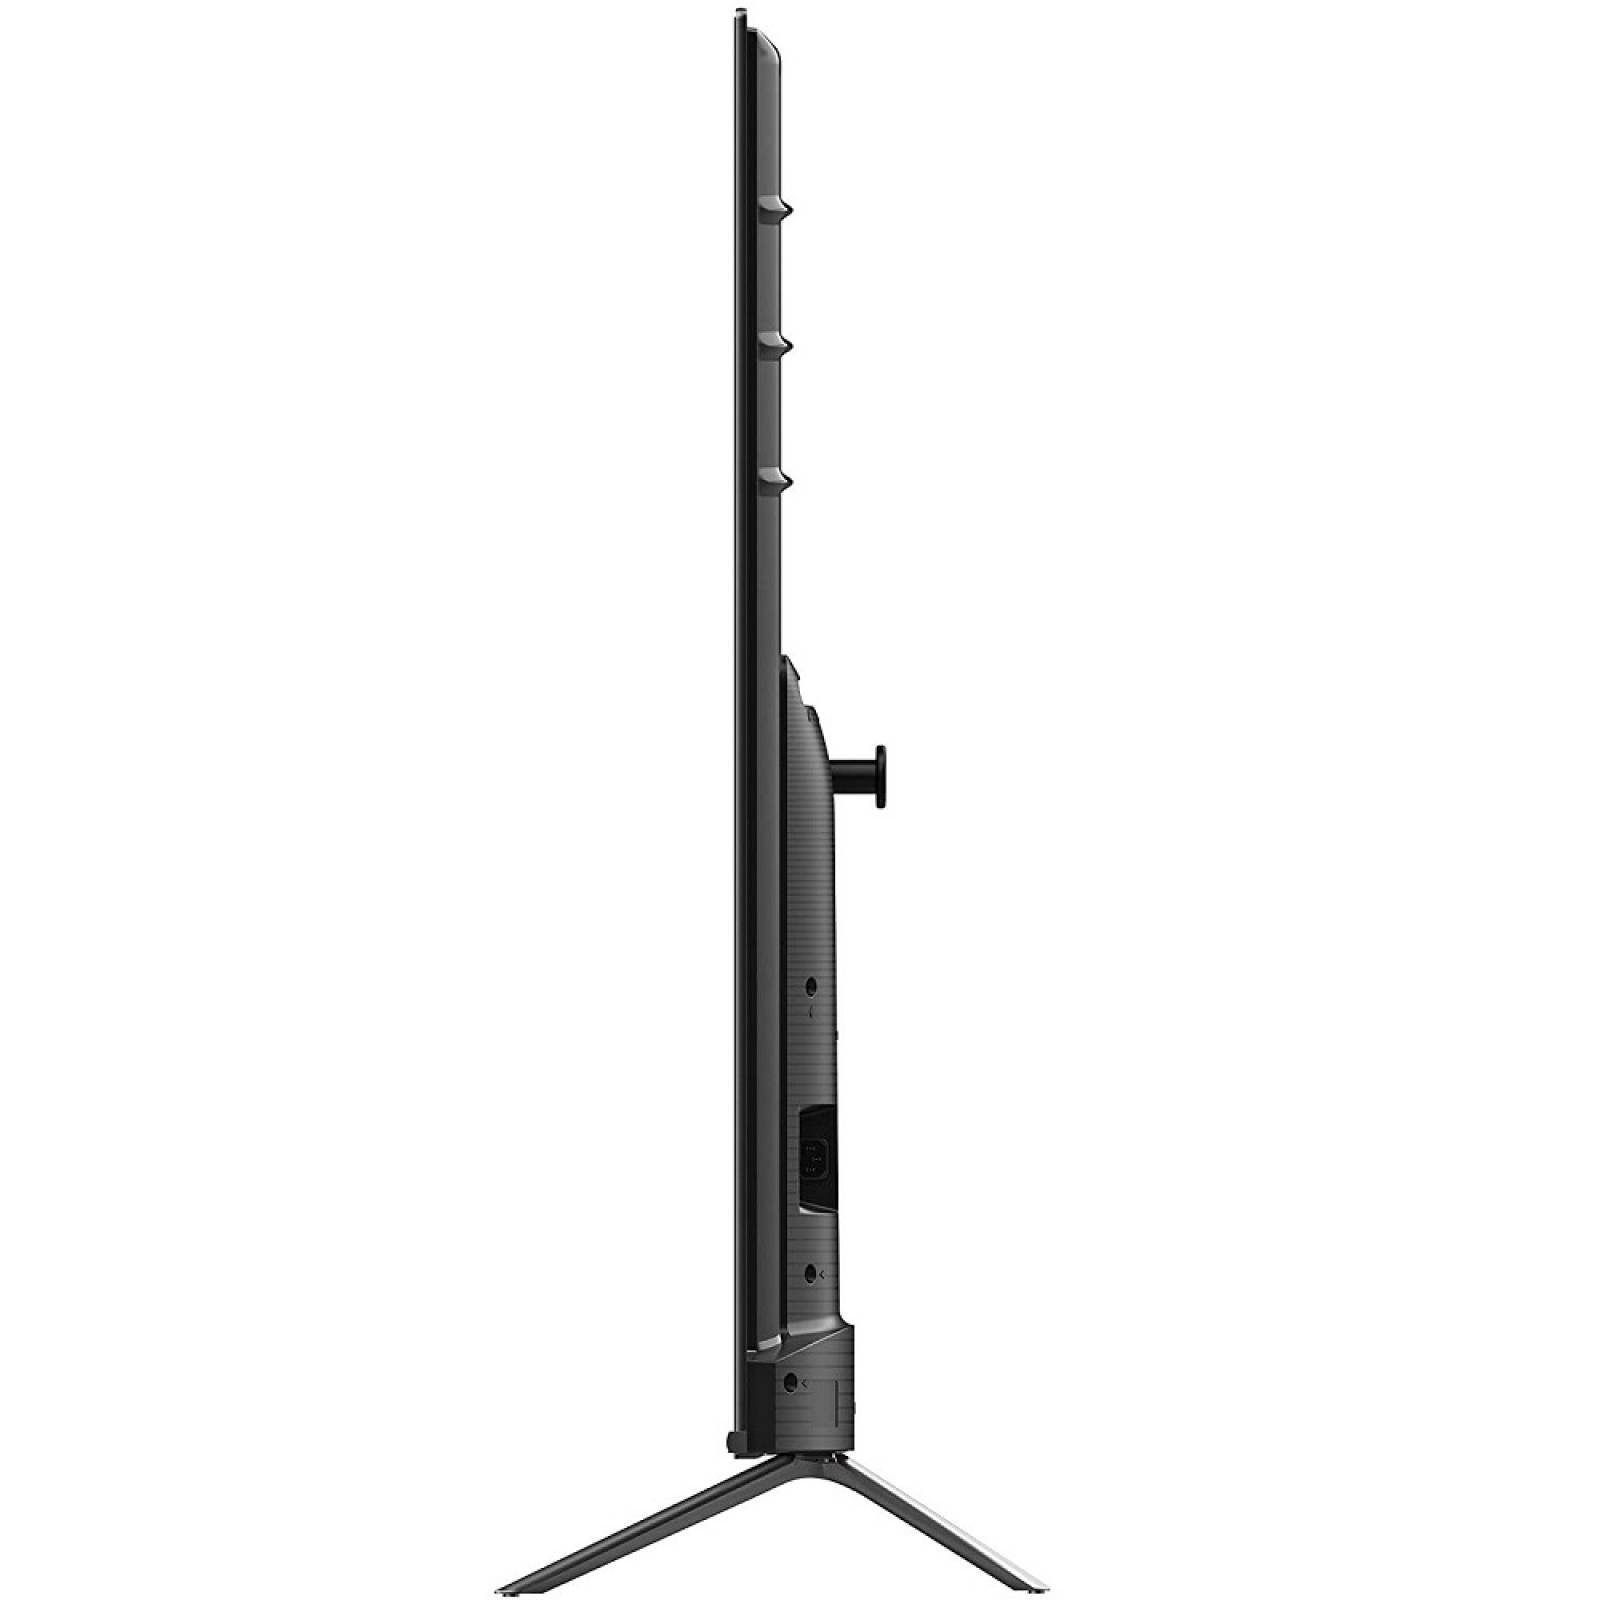 Smart TV Hisense 40 pulgadas Full HD 120 Motion Rate 40H5500E